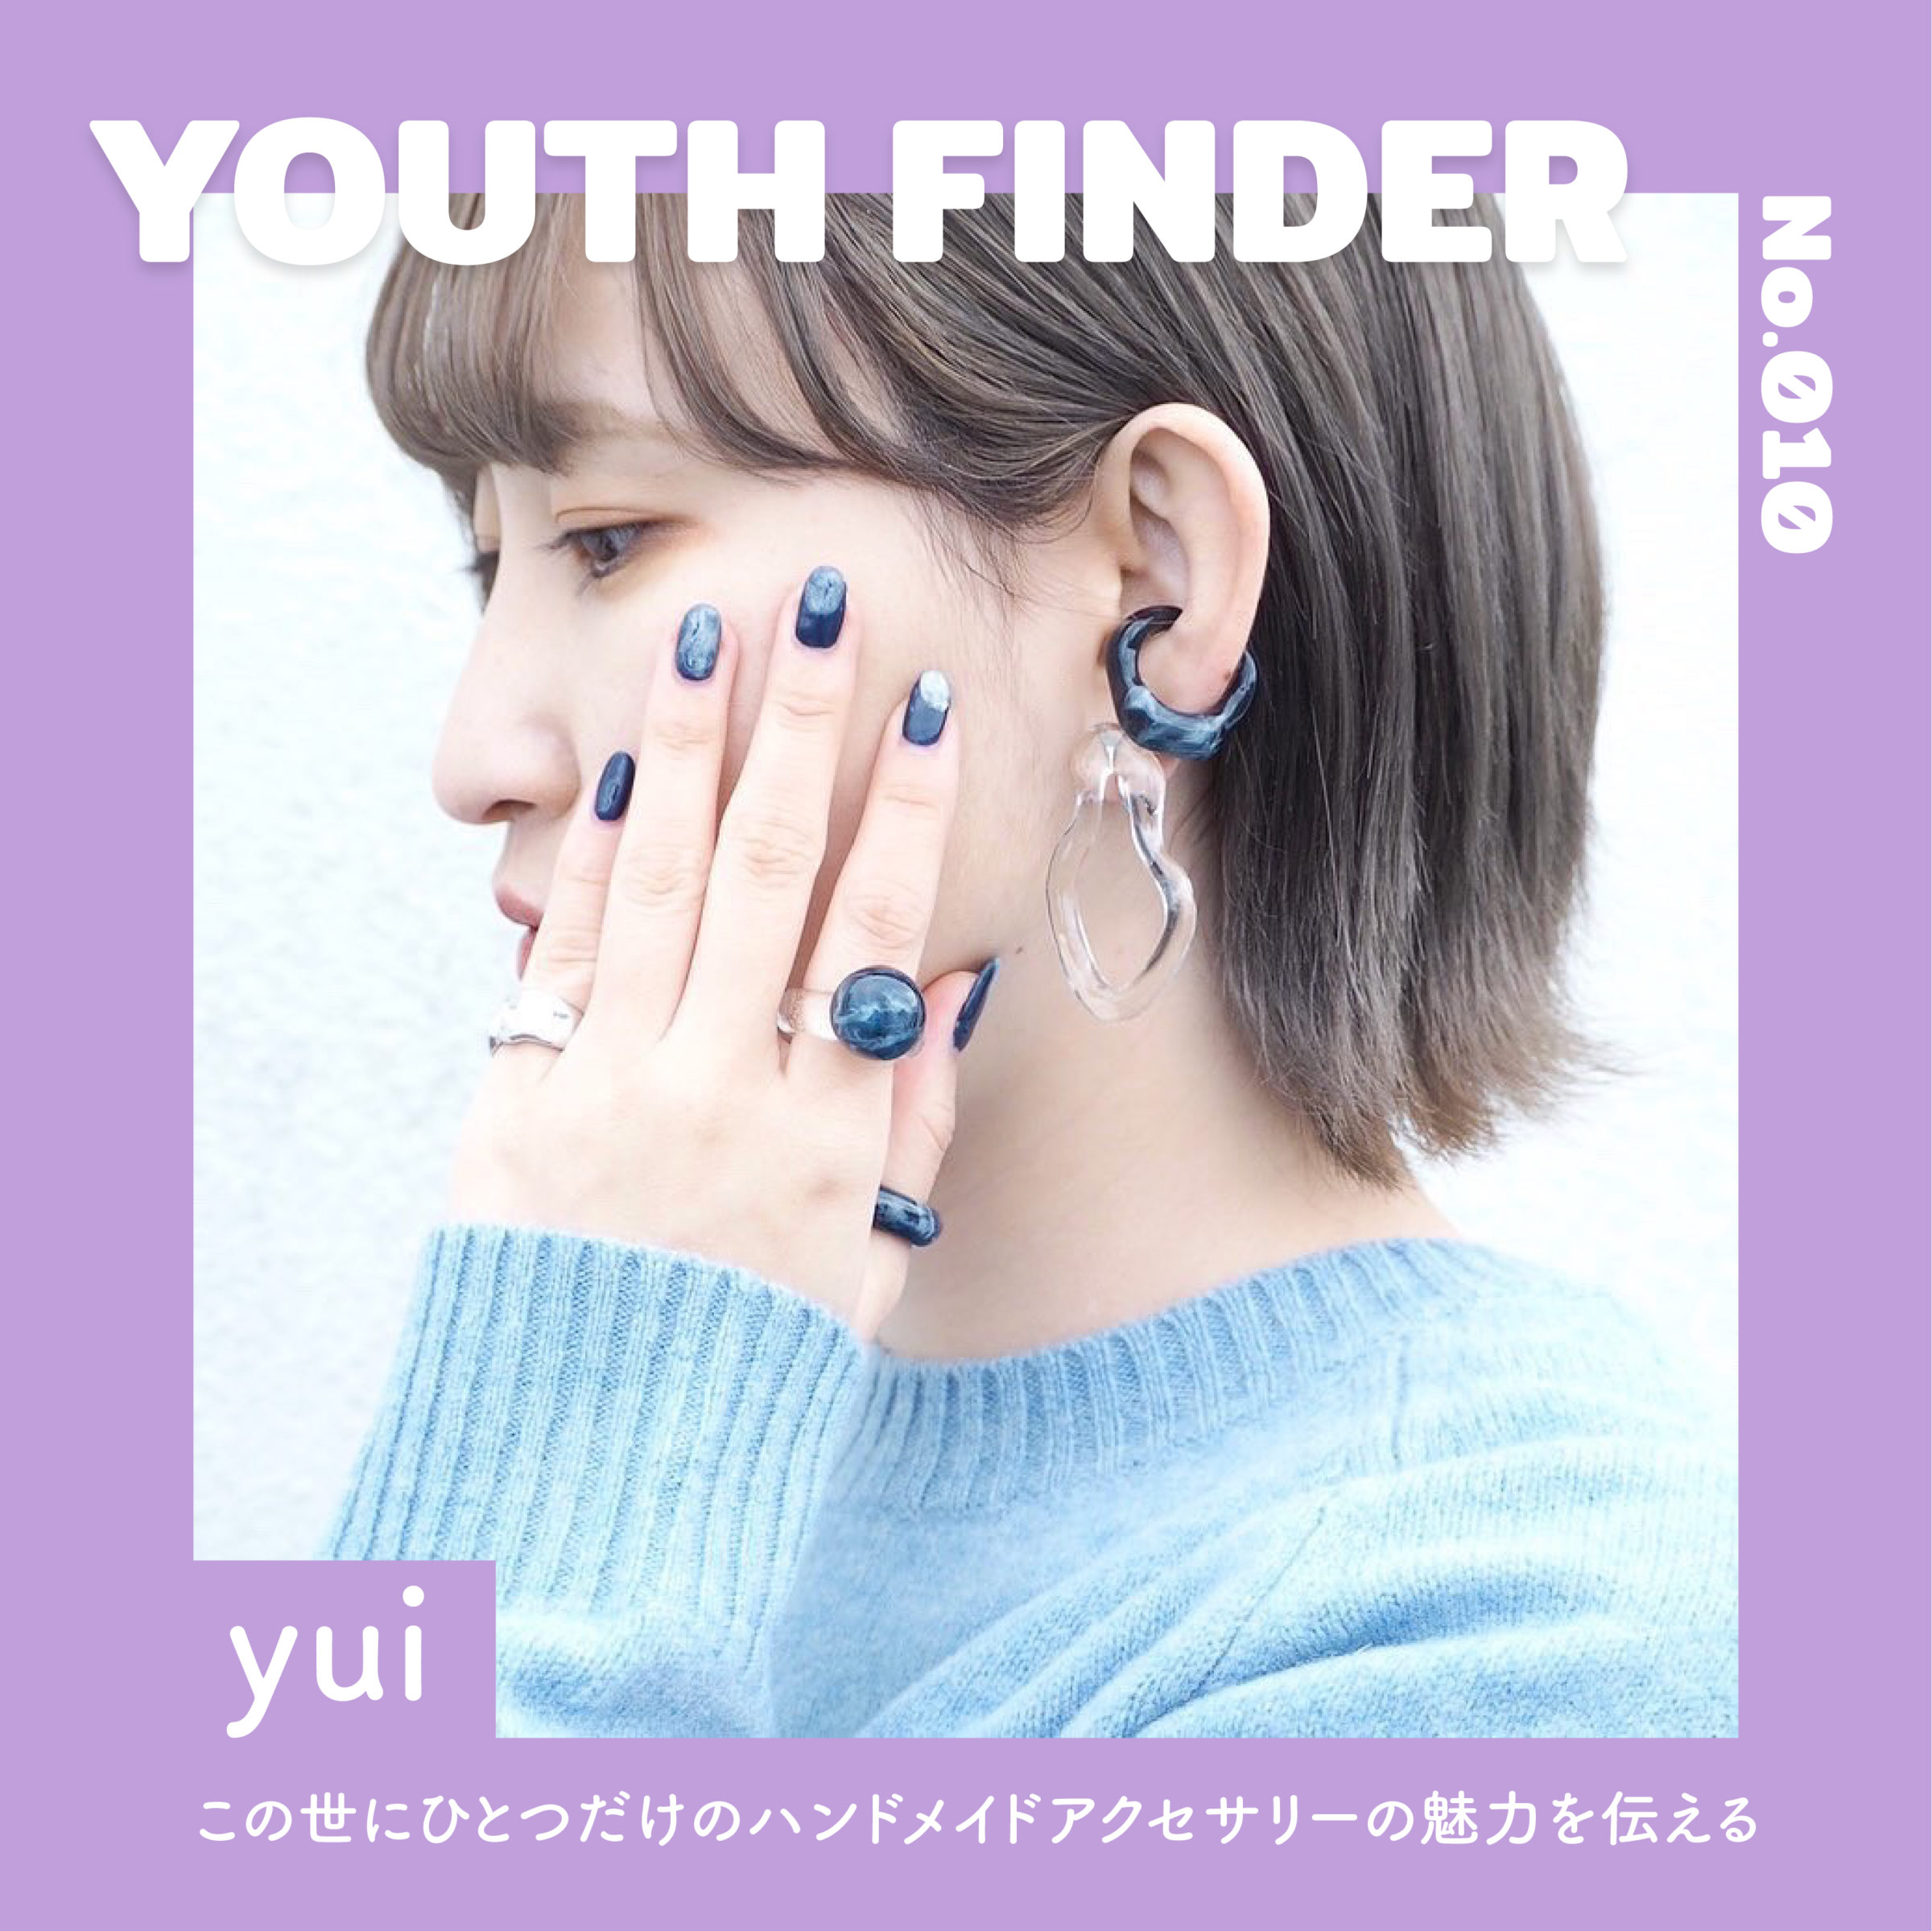 ハンドメイドアクセサリーの制作をおこなう、yuiさん【Youth Finder】のサムネイル